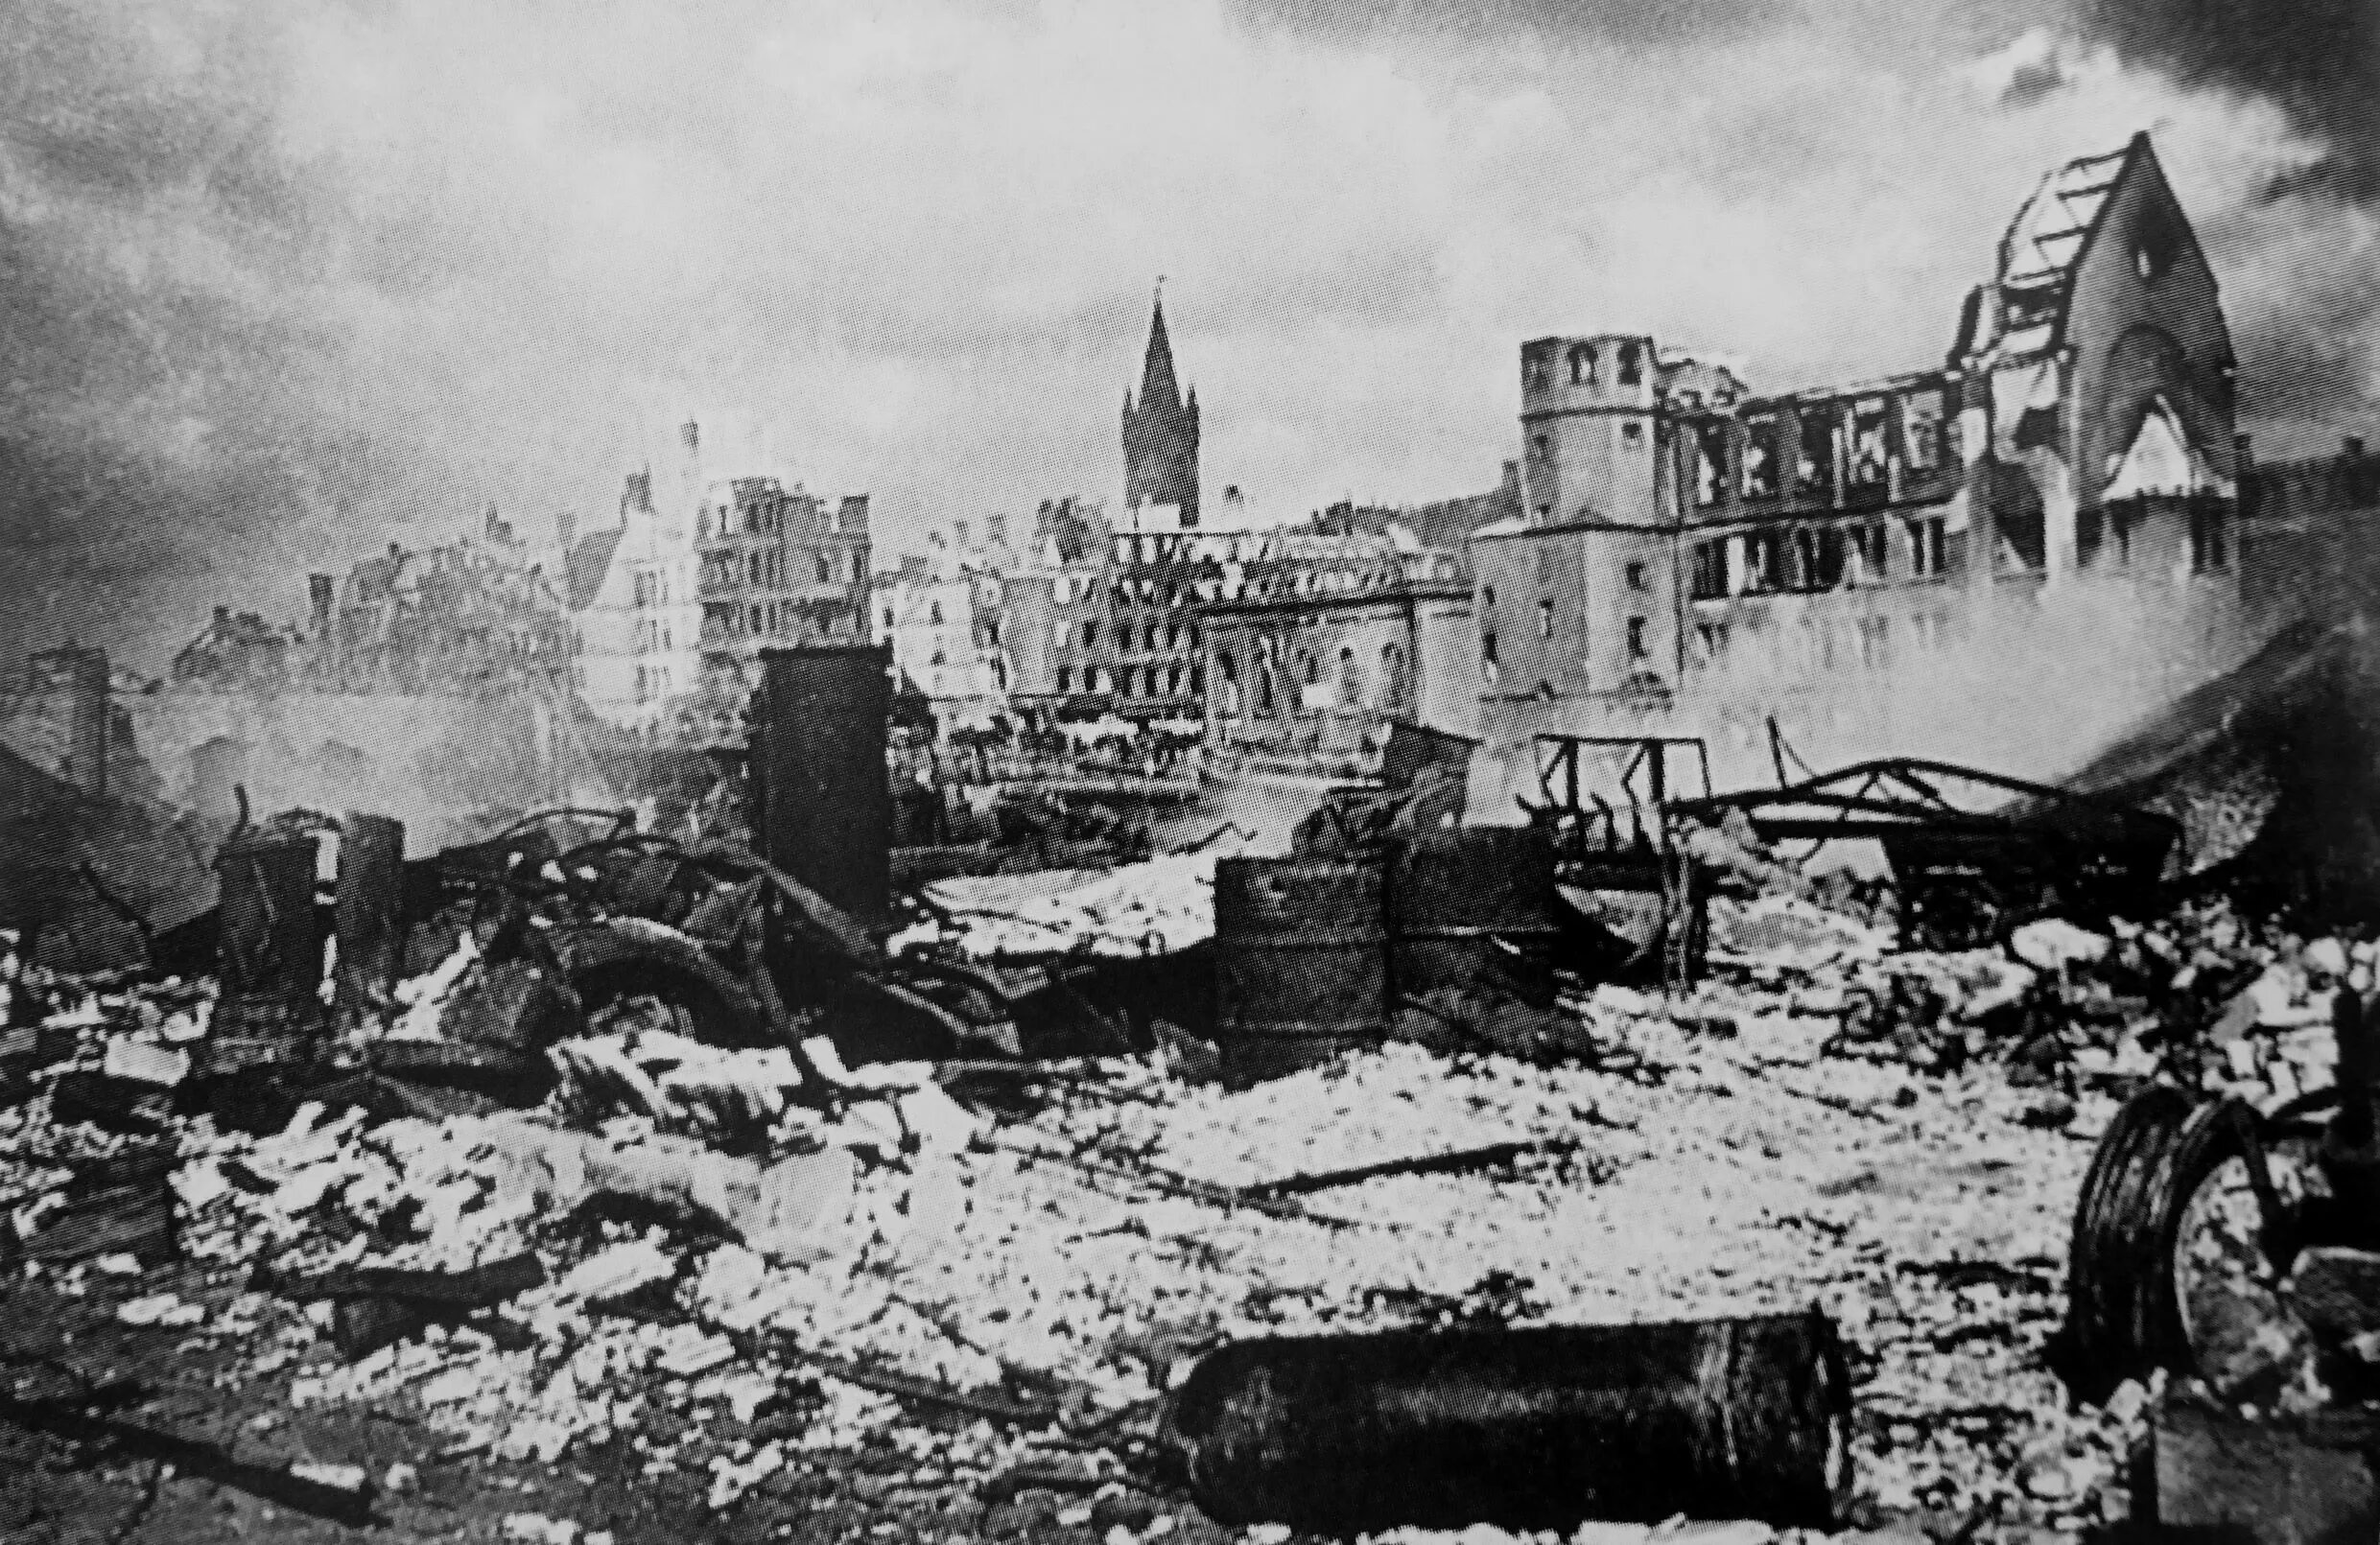 Штурм Кёнигсберга в 1945 году. Кенигсберг операция 1945. Крепость Кенигсберг 1945. Взятие крепости Кенигсберг 9 апреля 1945.